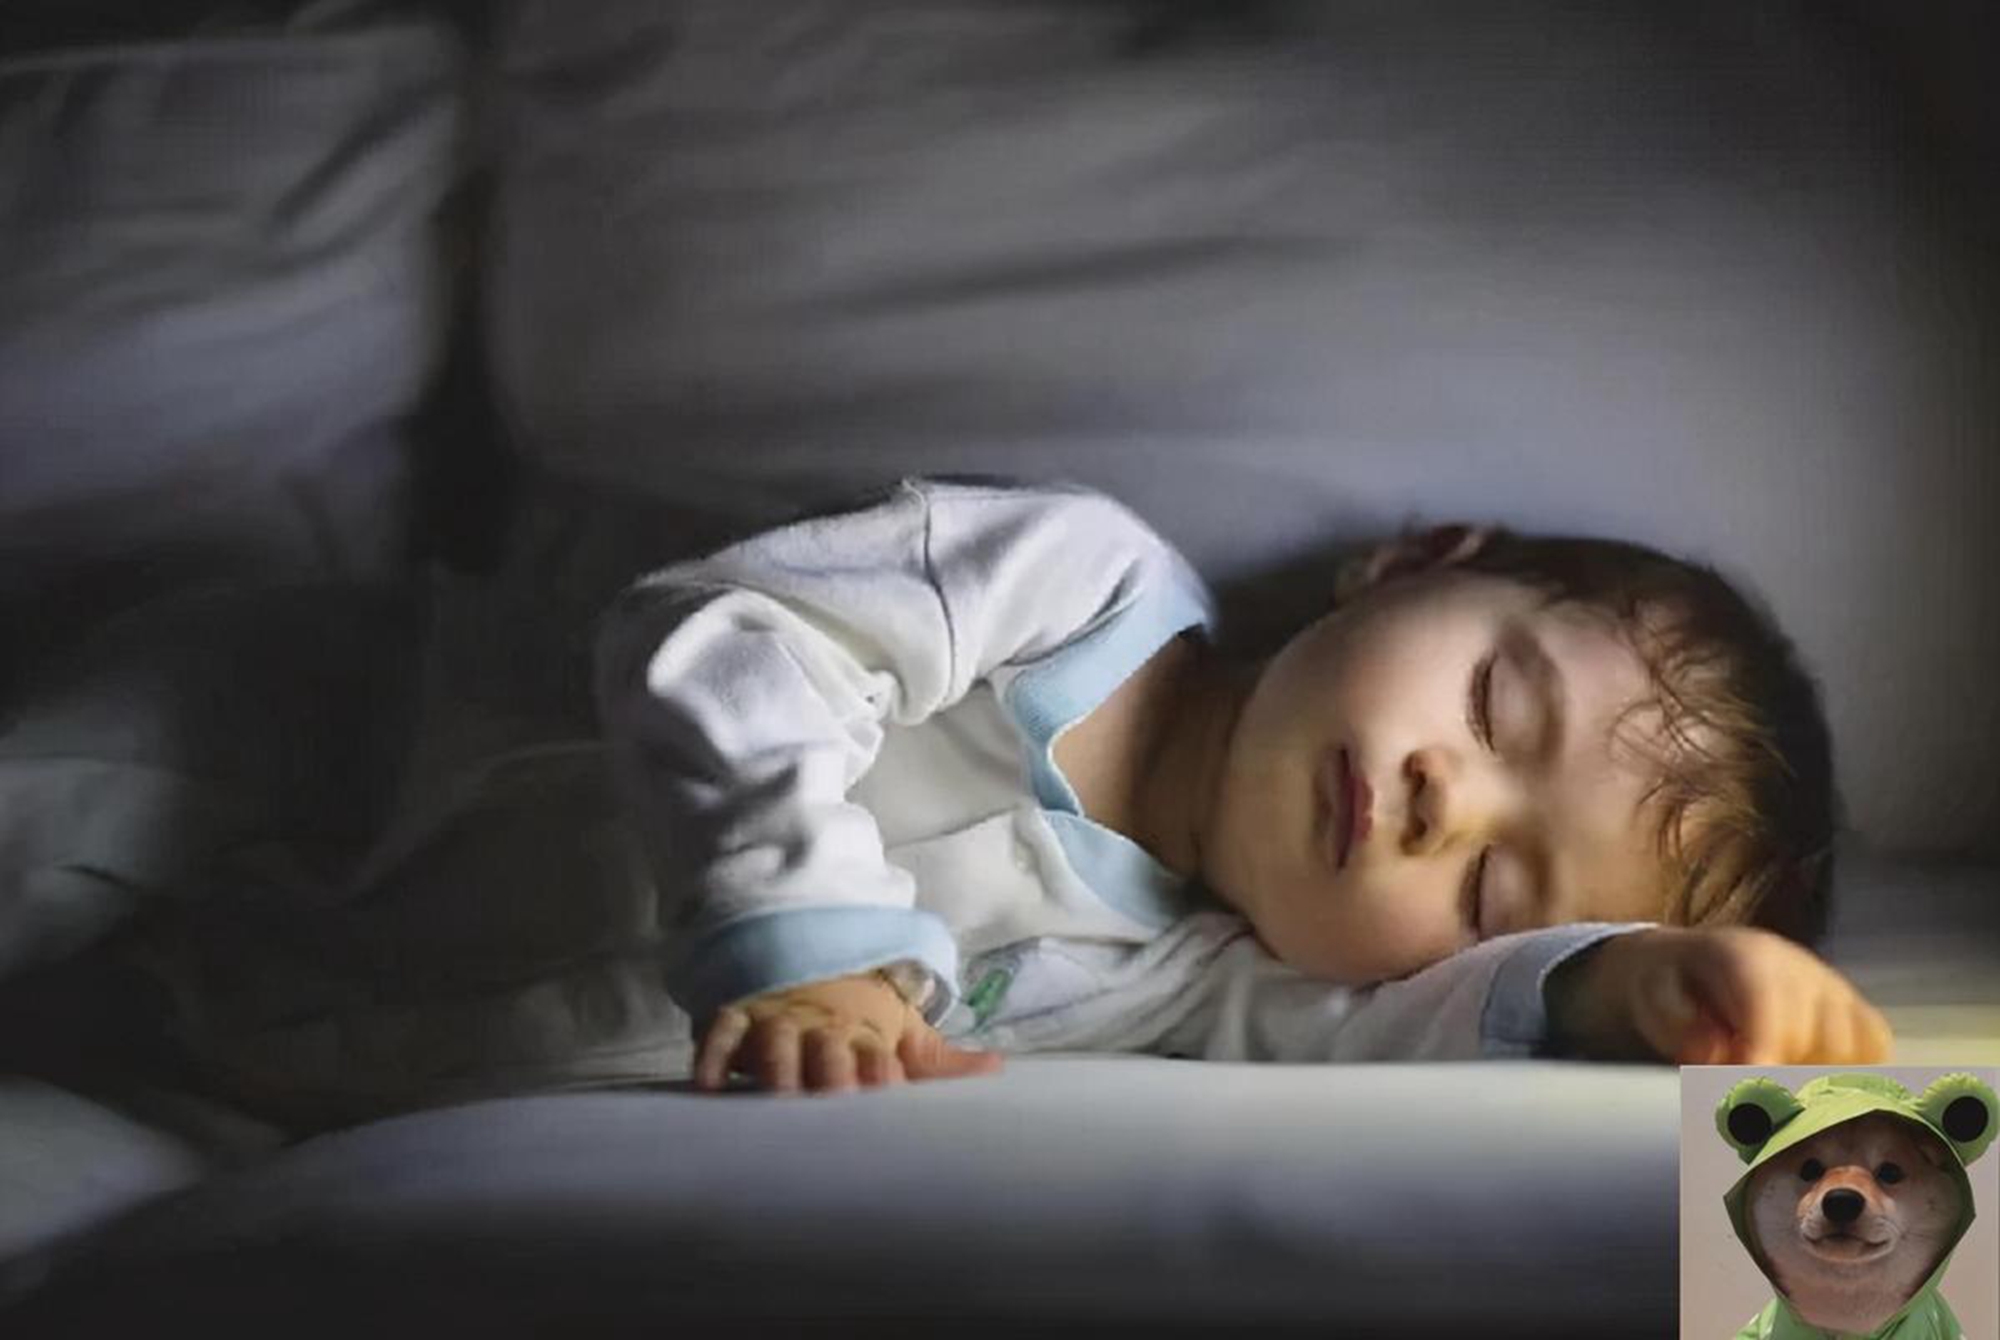 开灯睡觉并不是个好习惯 还会让你变胖‼ 专家研究: 夜间光源恐增肥胖风险😢